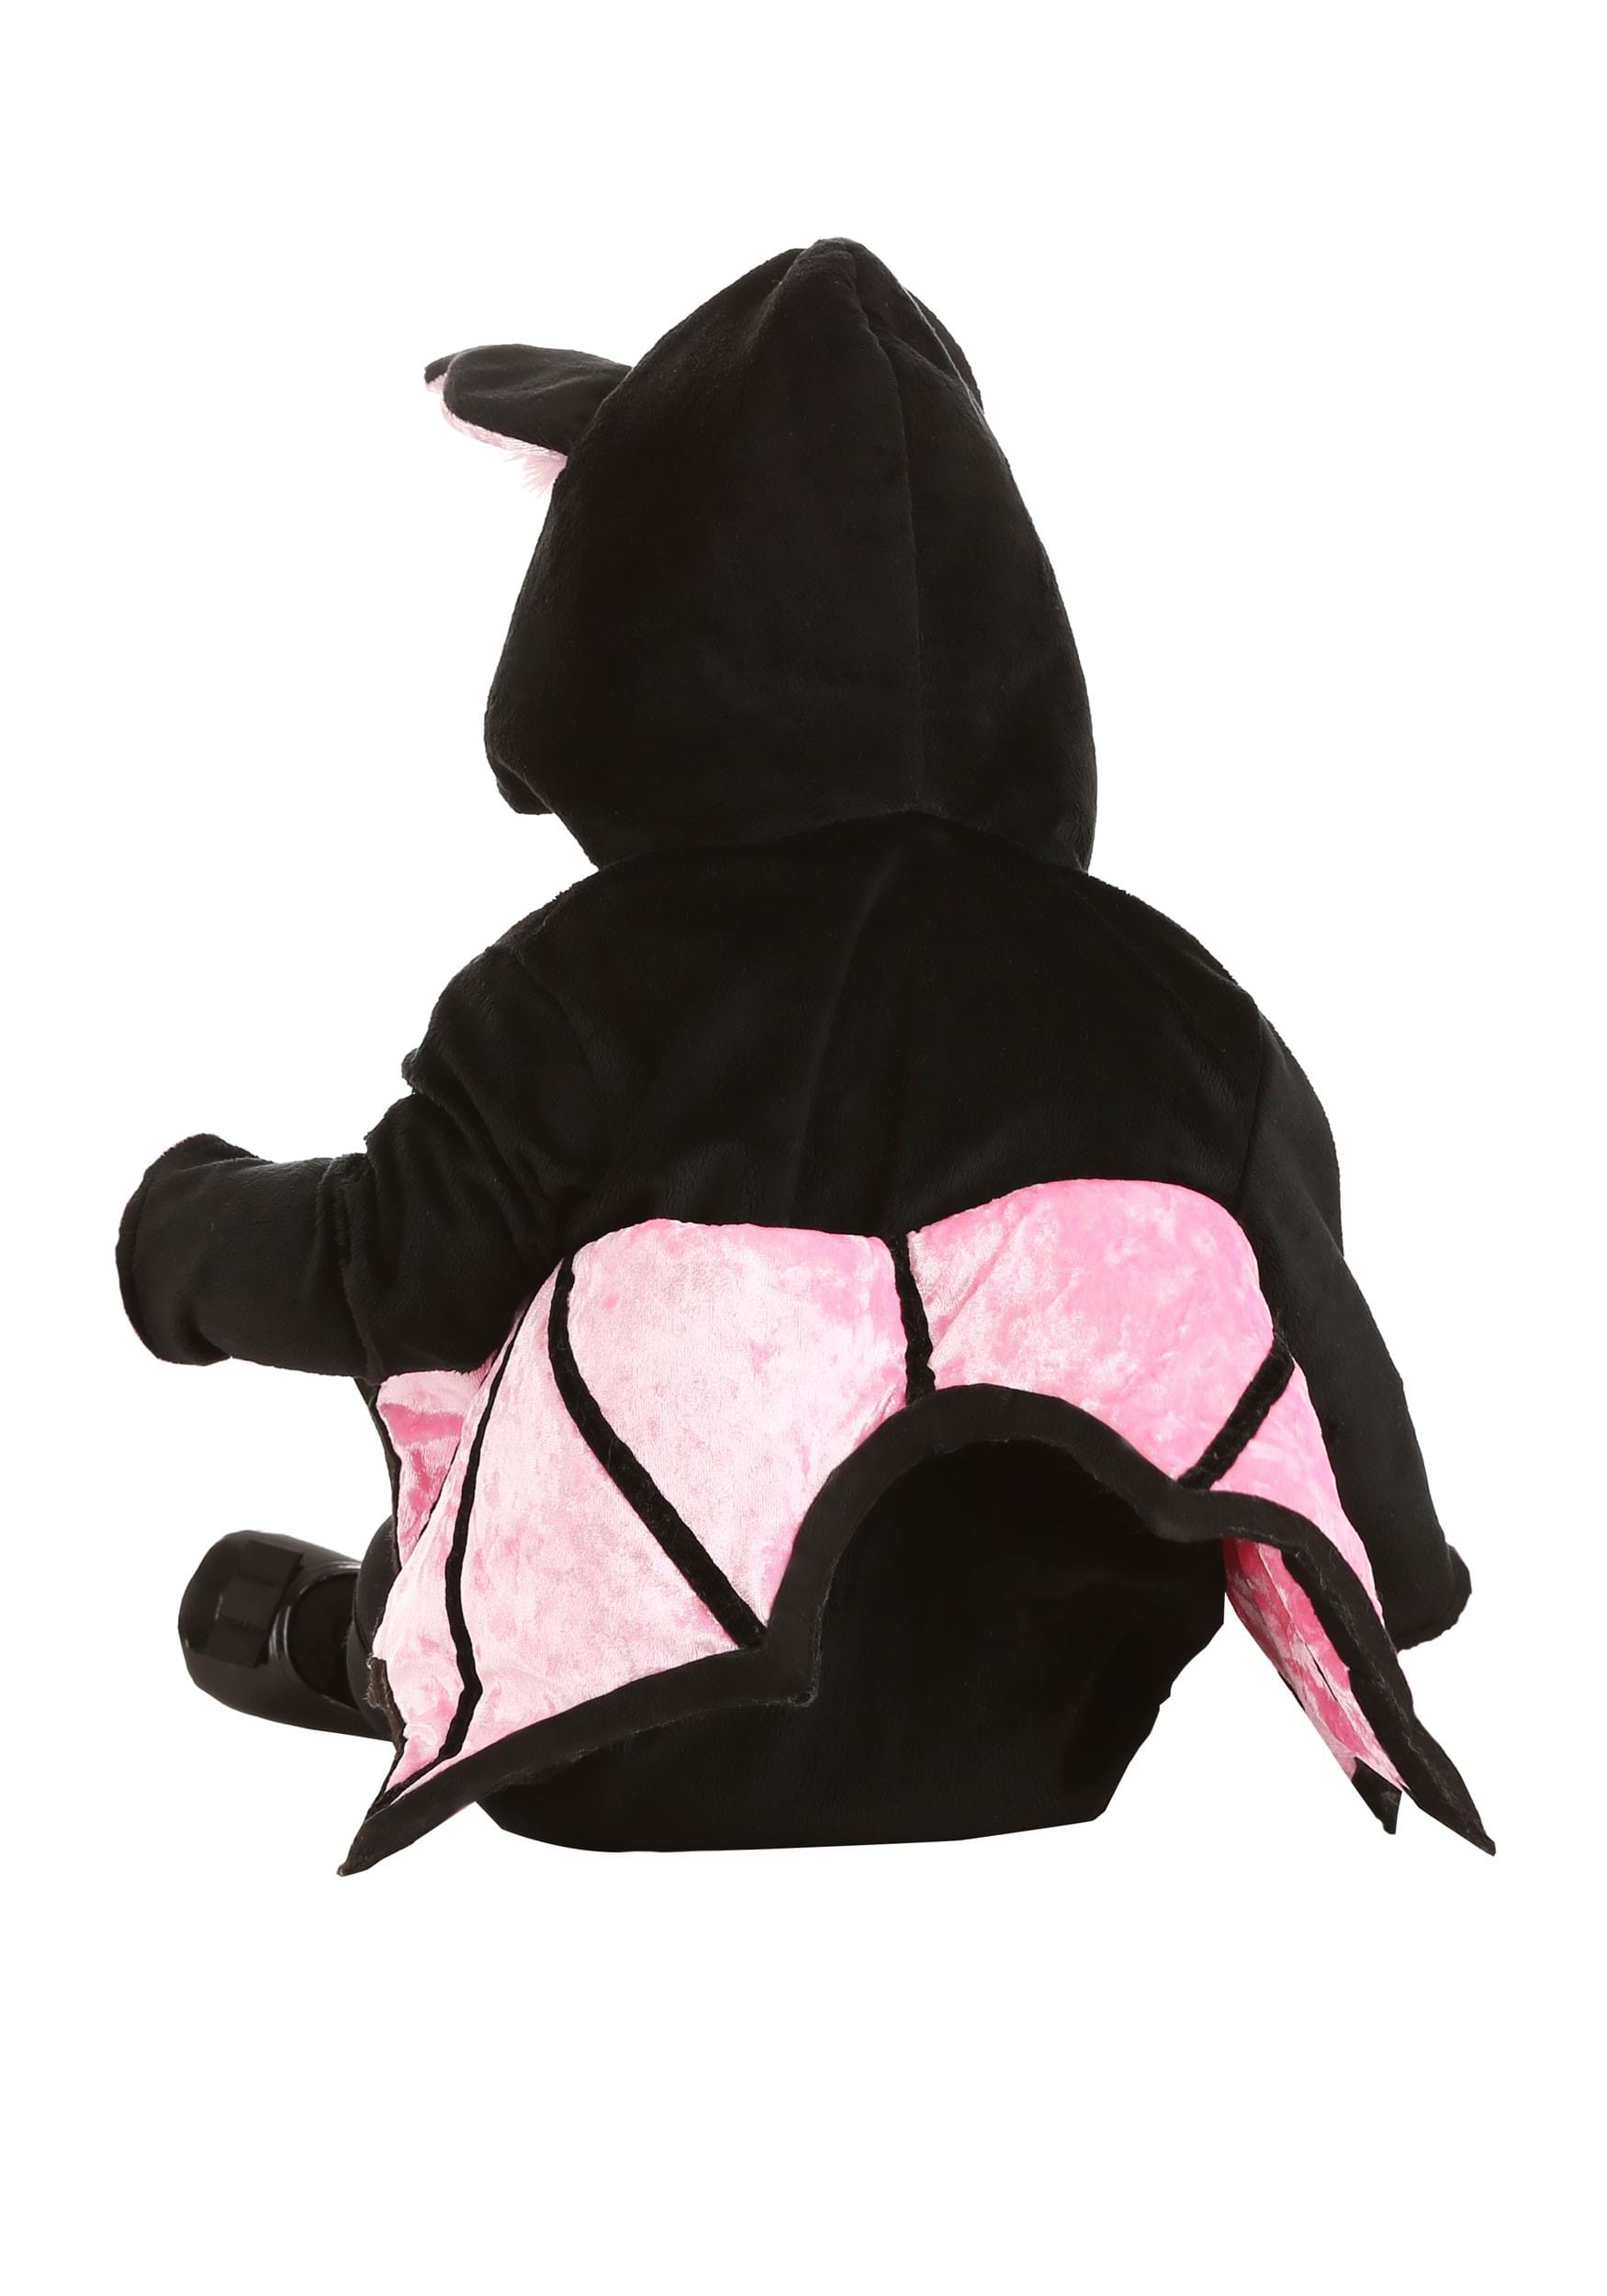 Pink Vampire Bat Baby Costume